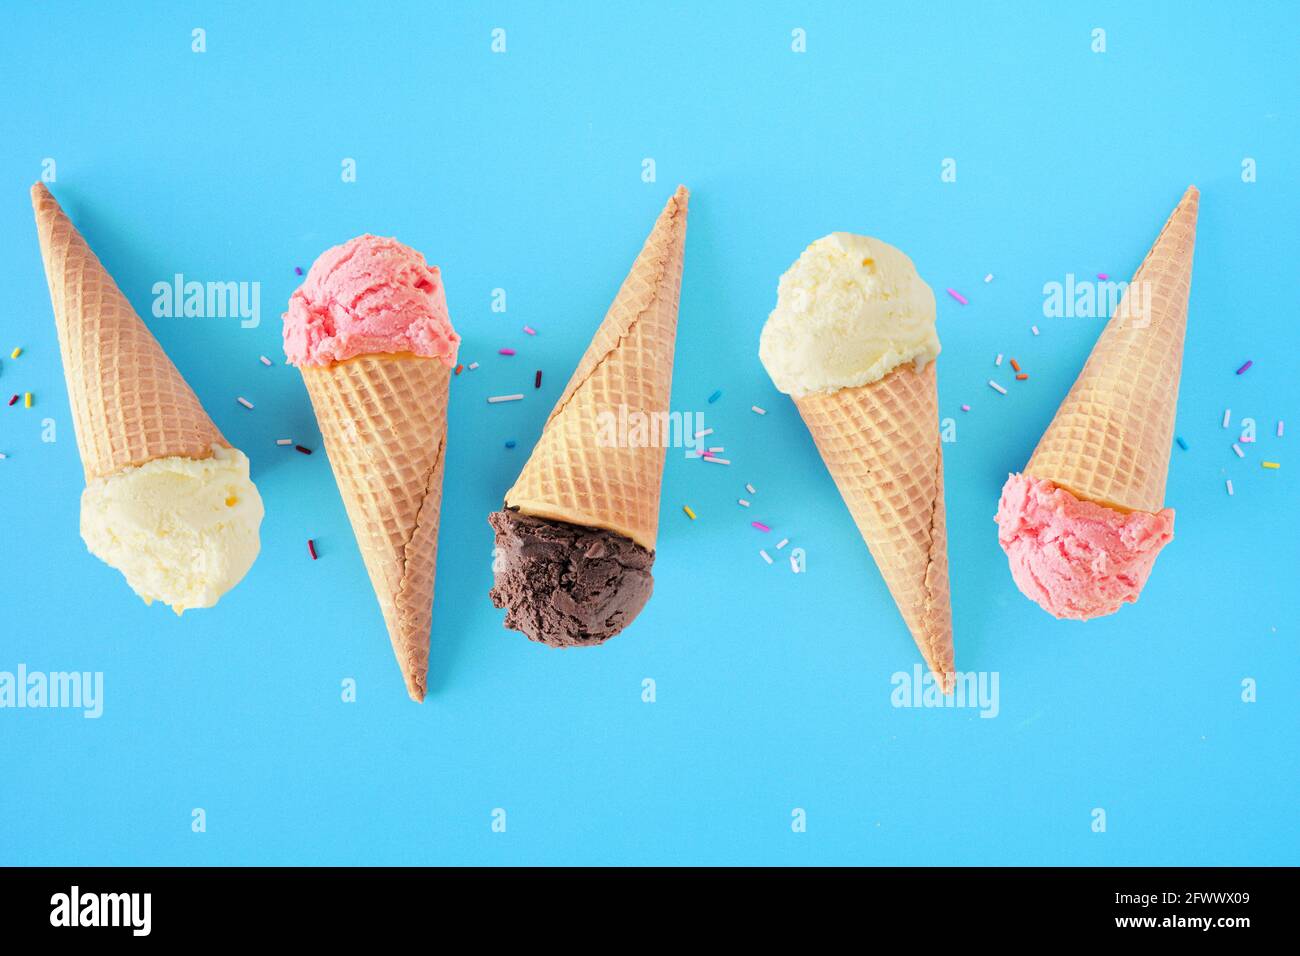 Eiskonus flach auf blauem Hintergrund. Aromen von weißer Vanille, rosa Erdbeere und dunkler Schokolade. Stockfoto